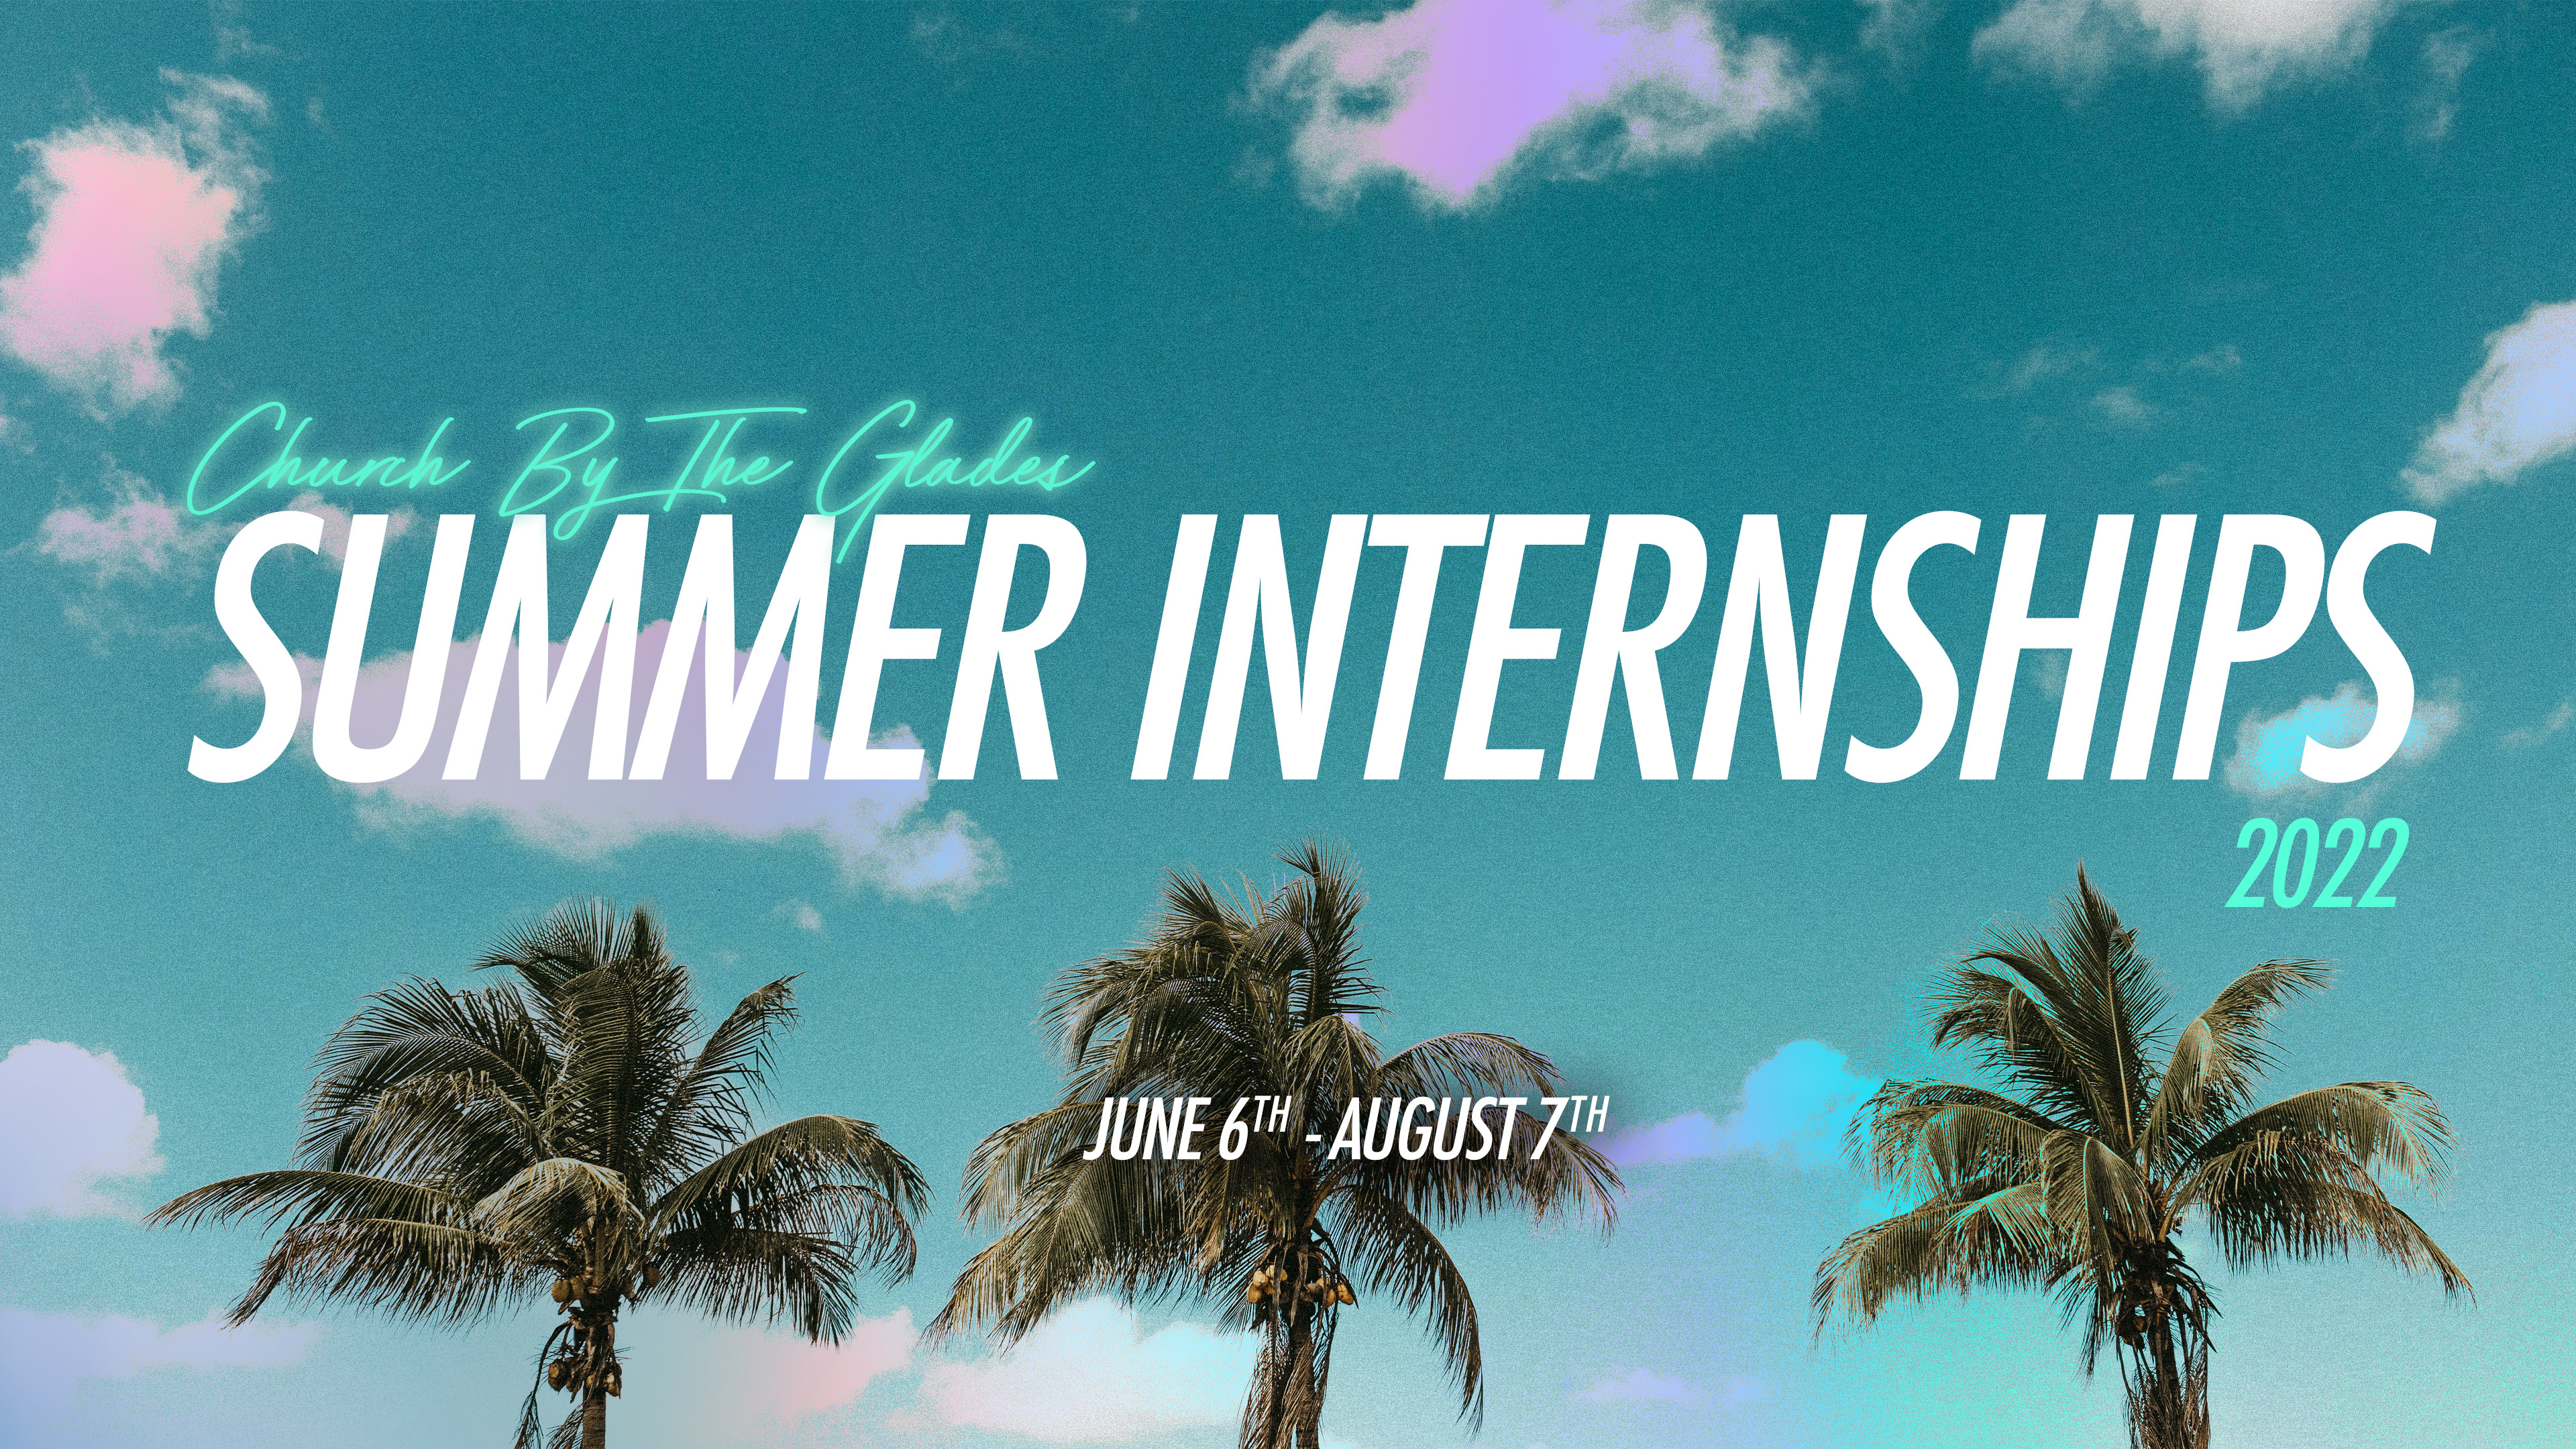   Summer internship